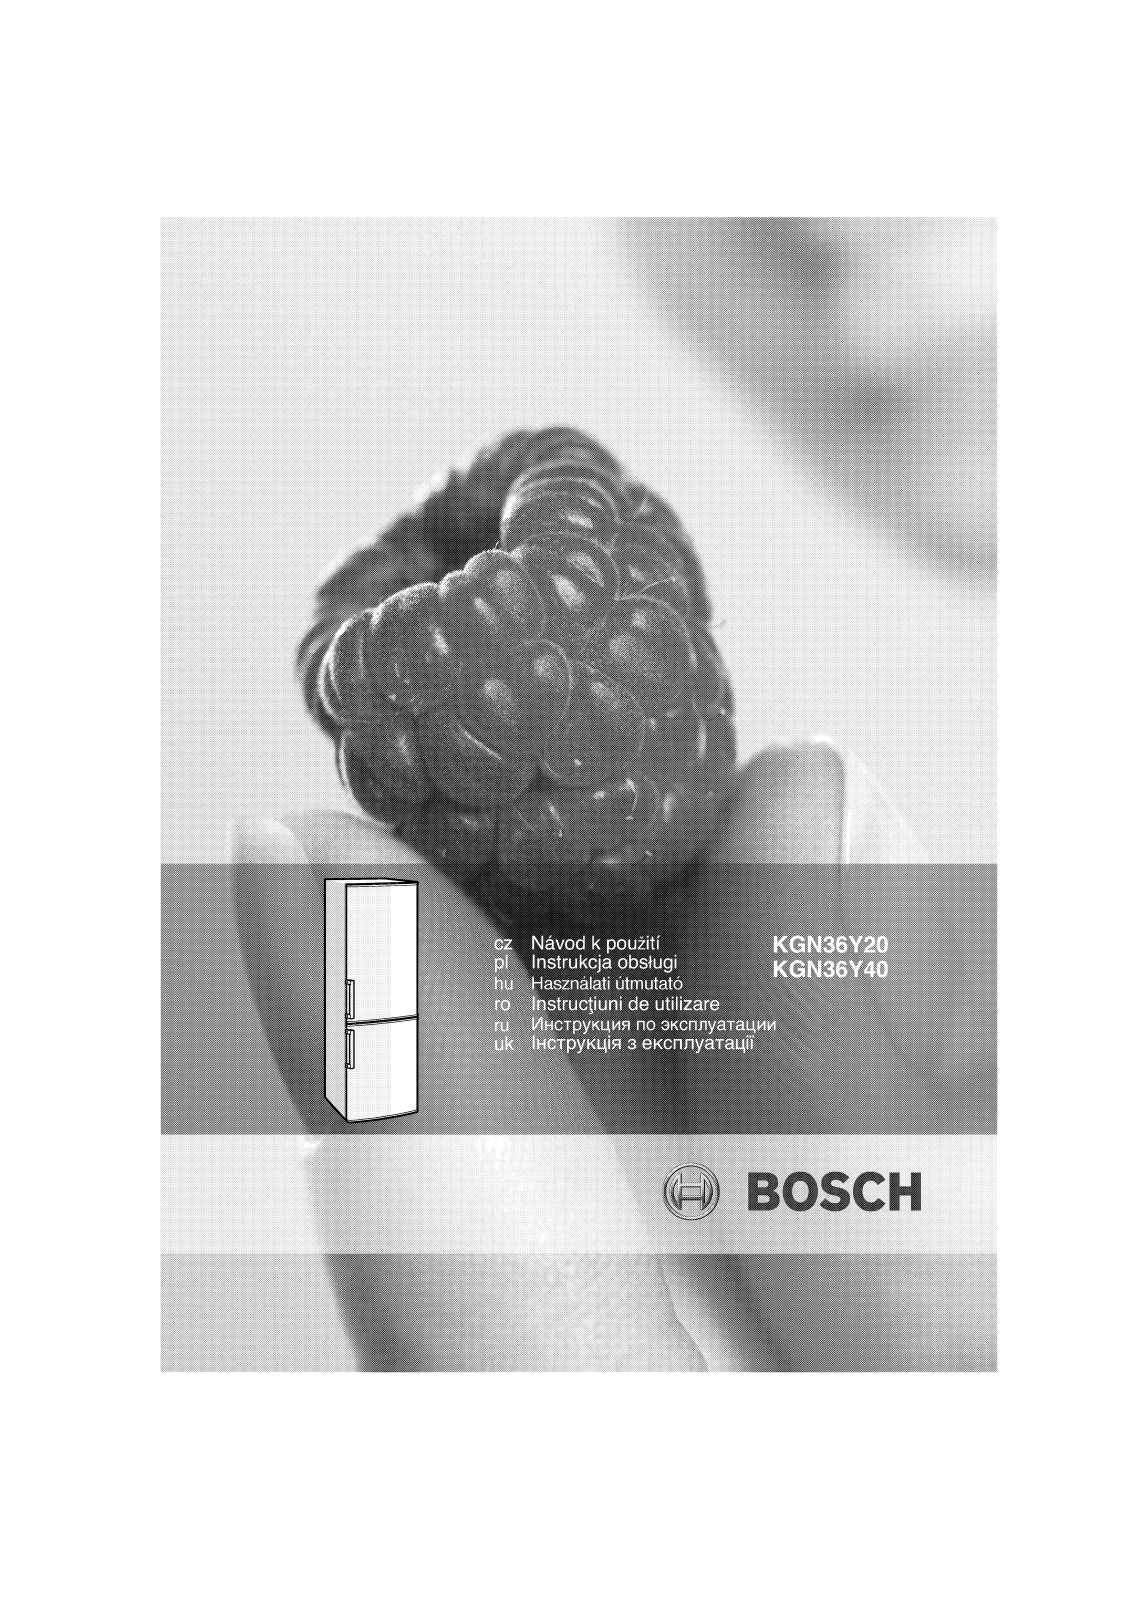 Bosch KGN36Y40 User Manual